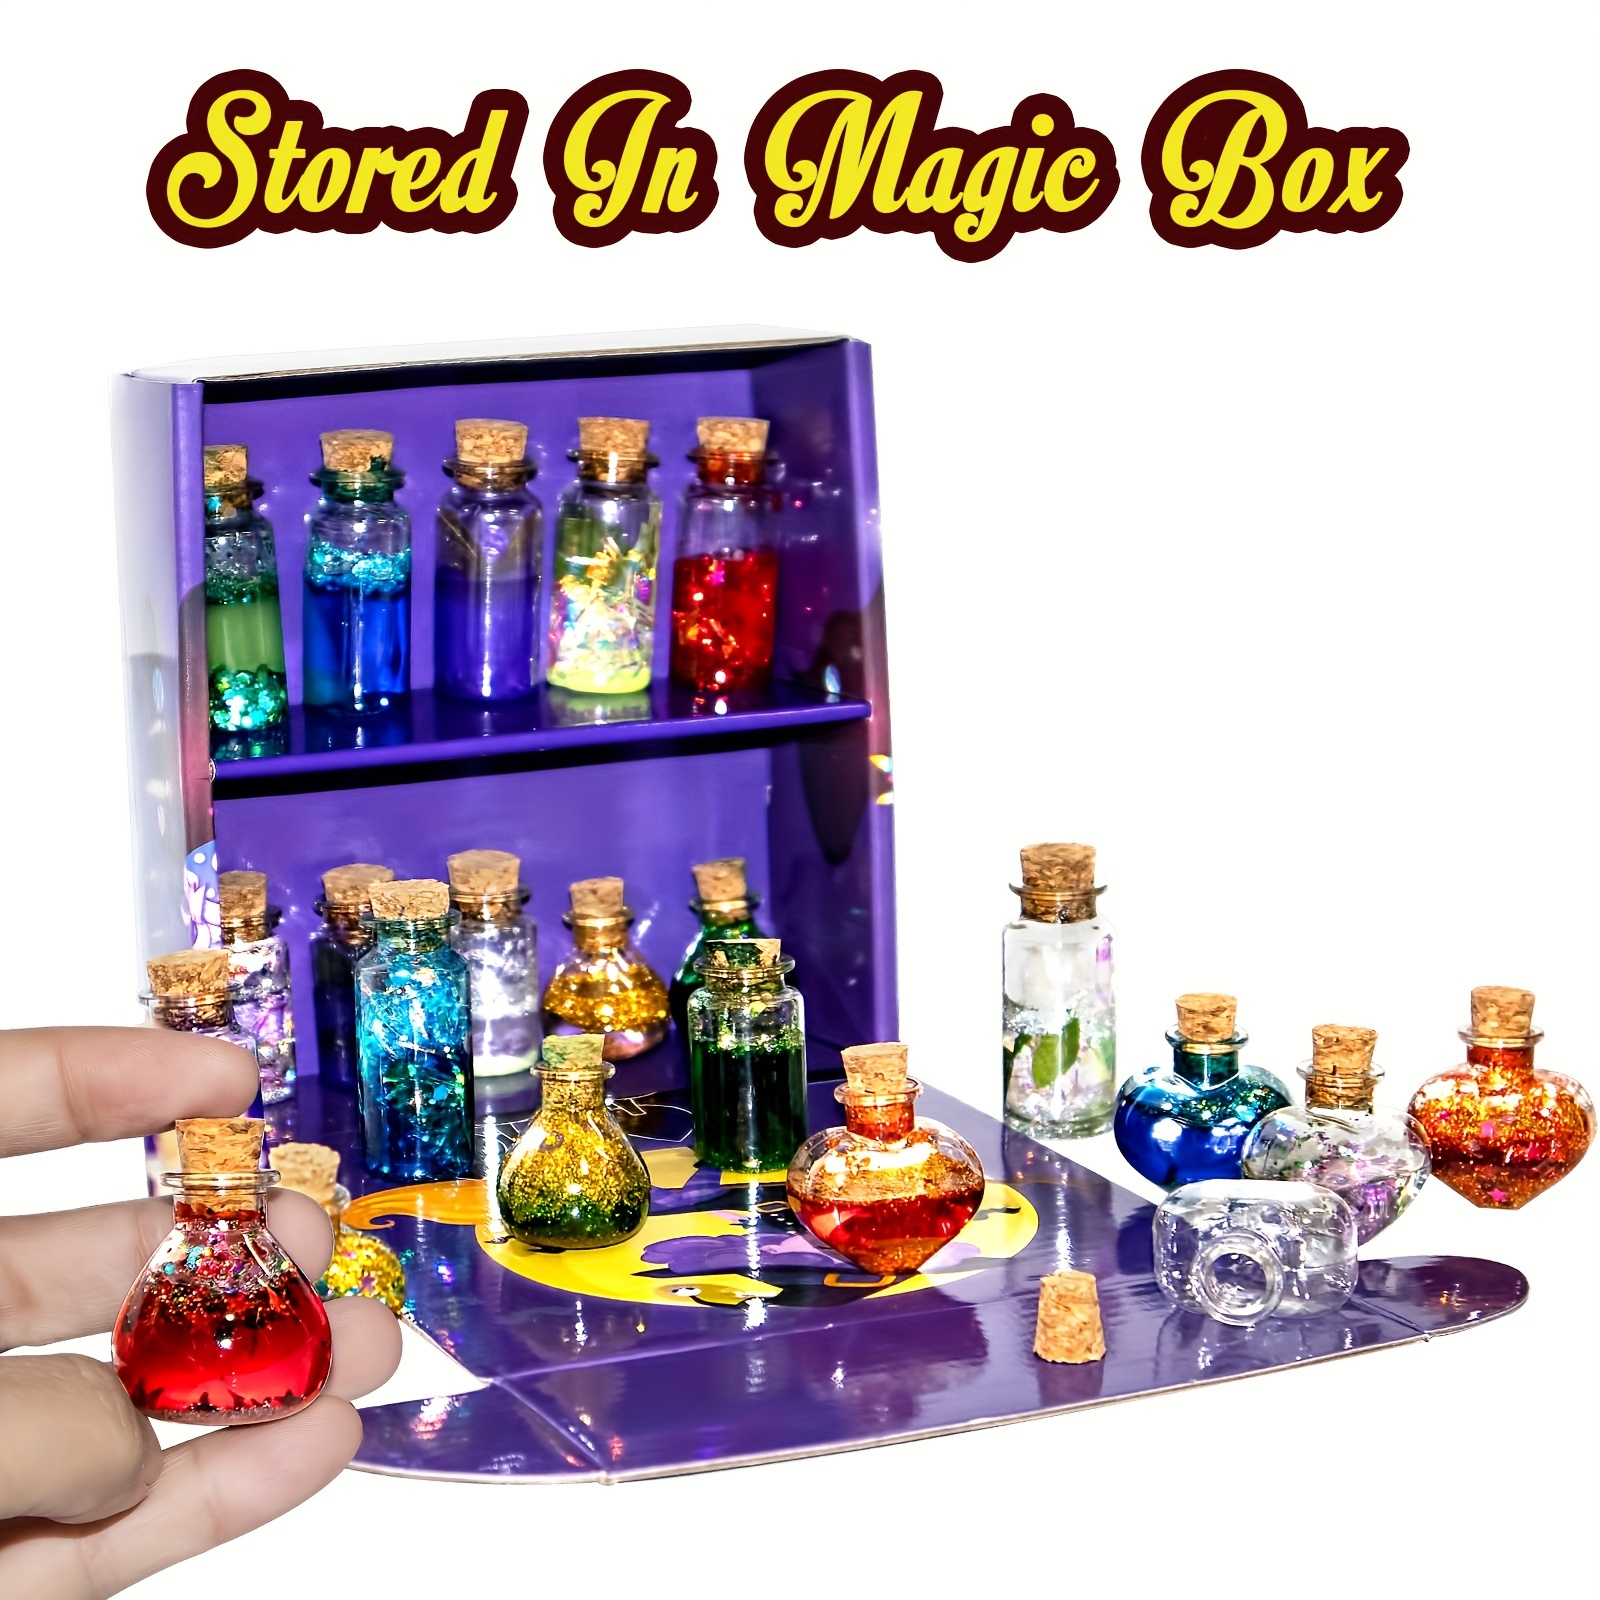  LDomet Fairy Magic Potions Kit for Kids - DIY 22